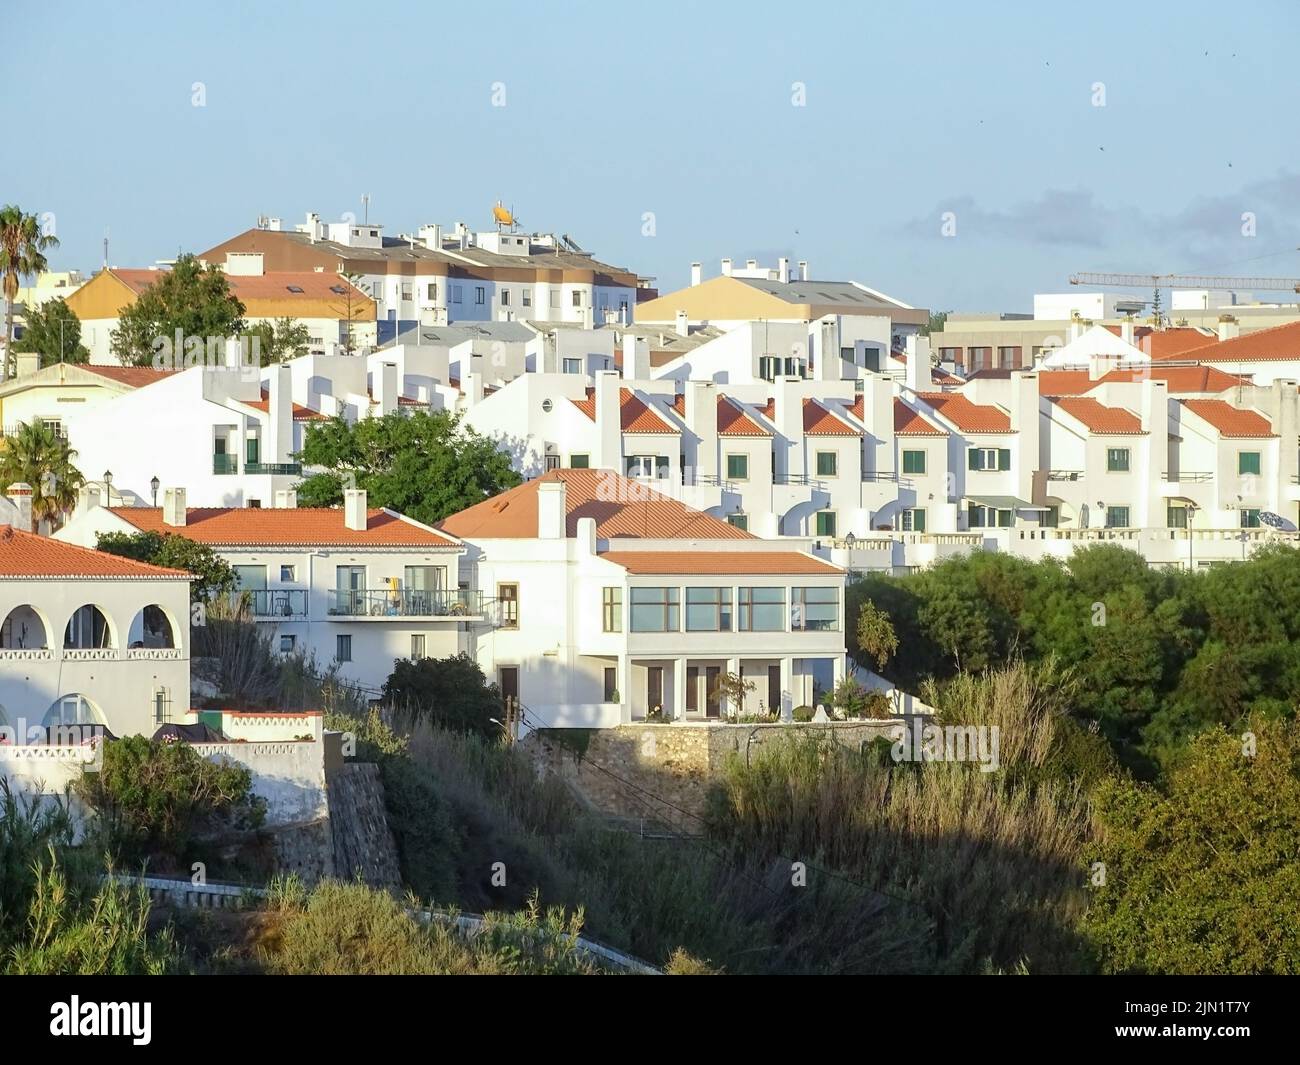 Vue sur les maisons blanches avec des toits d'orange dans la ville portugaise de Sines Banque D'Images